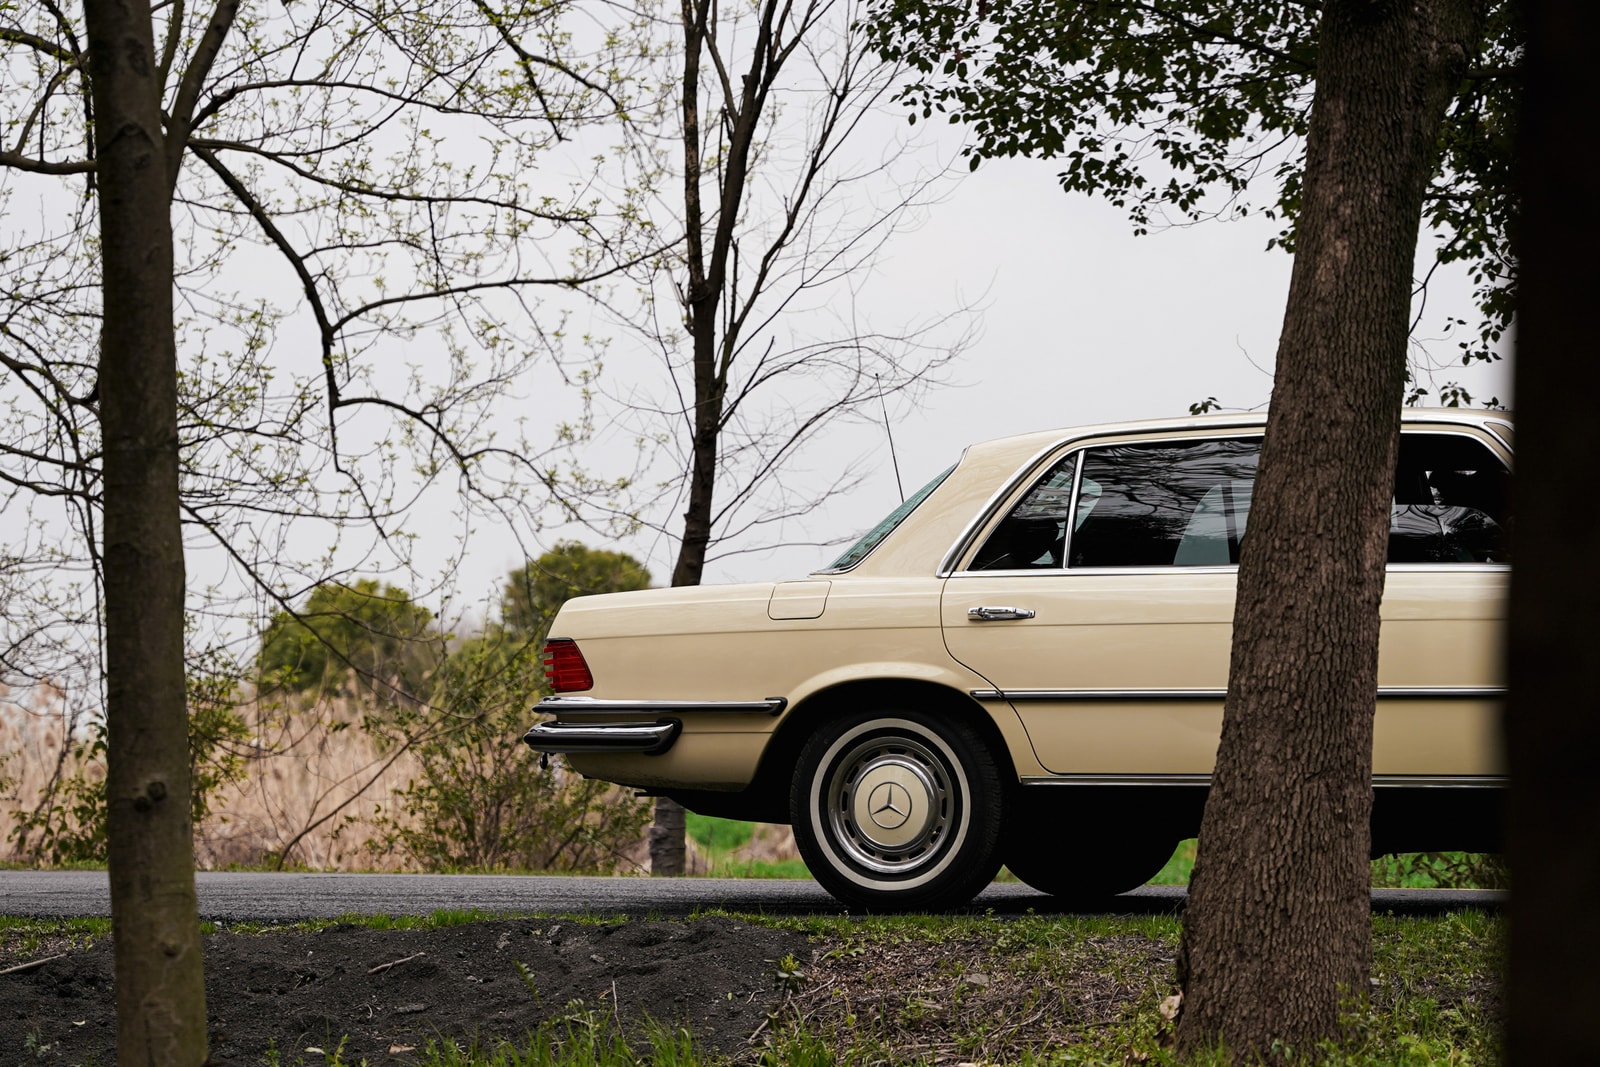  一台 70 年代的 Mercedes-Benz W116 魅力何在？PROS 主理人陈昊分享爱车故事 